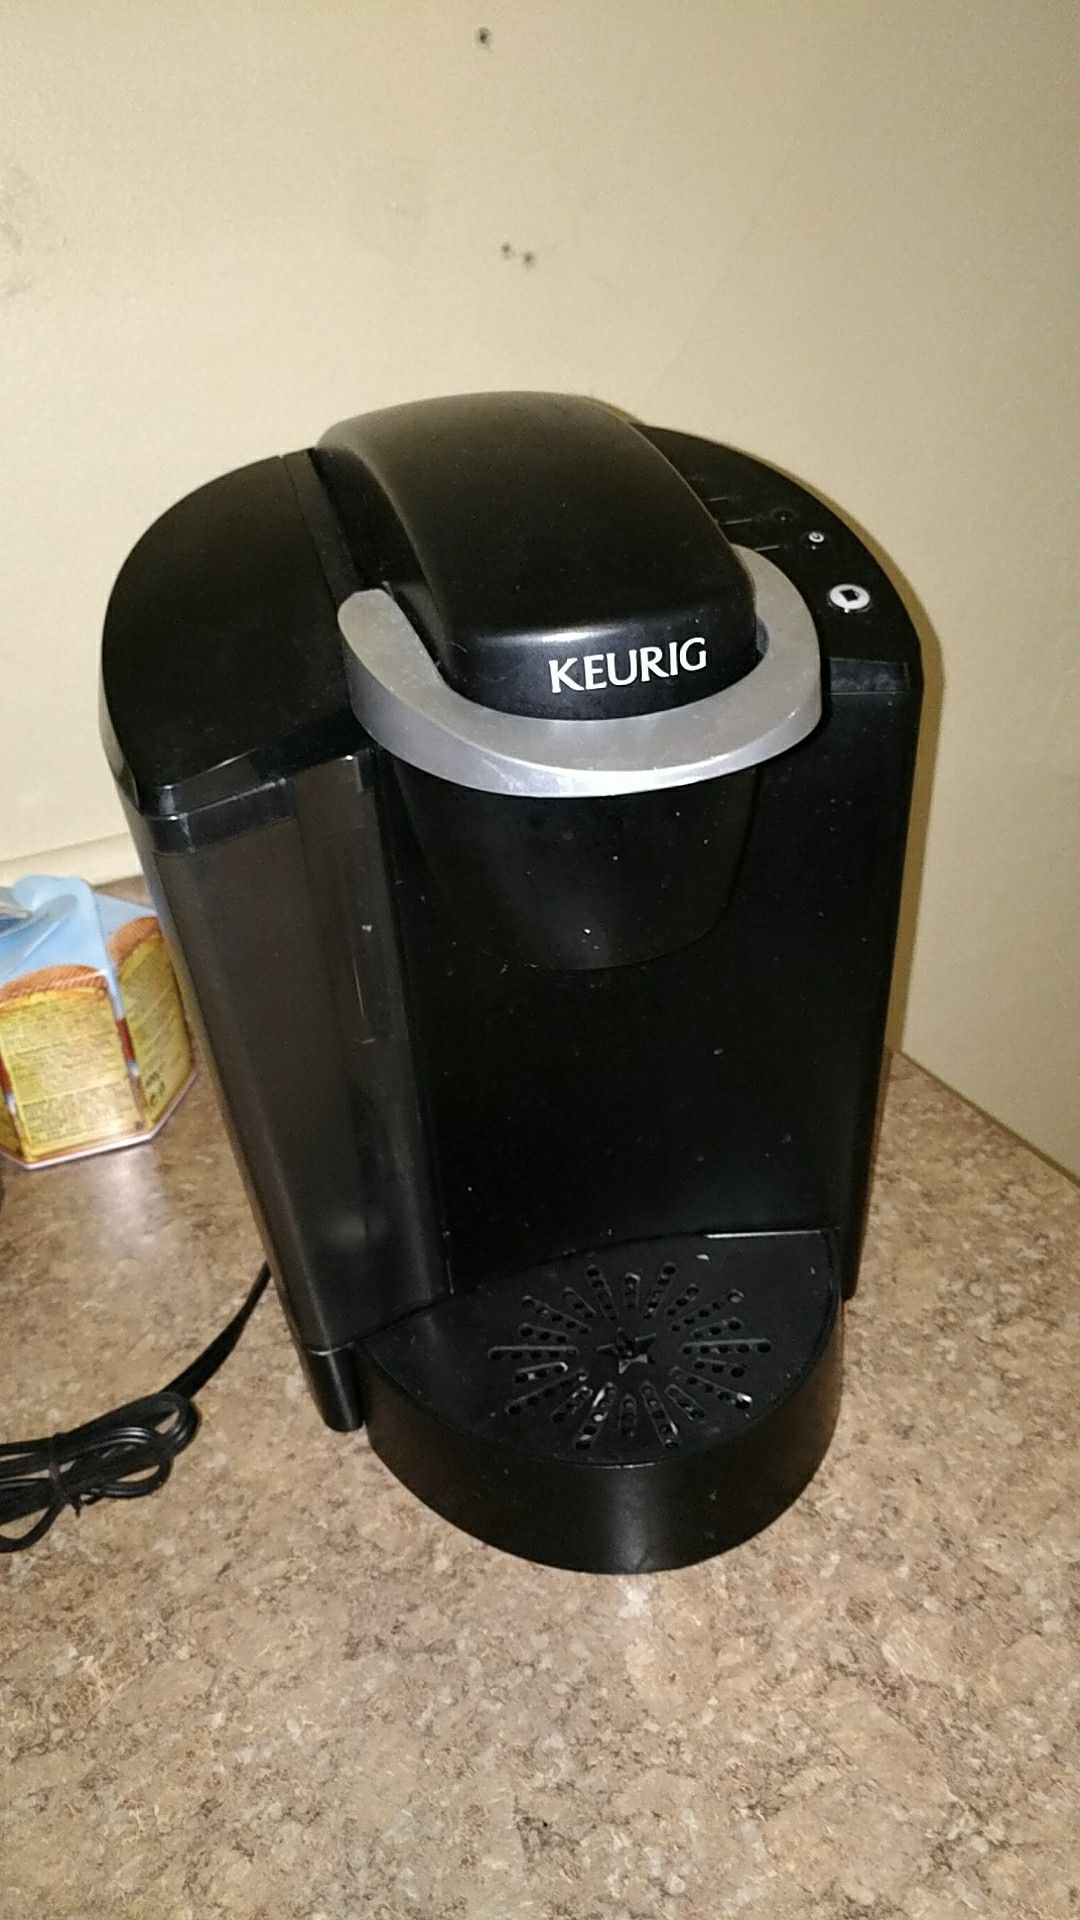 Keurig Coffee Maker (Needs Cleaning)